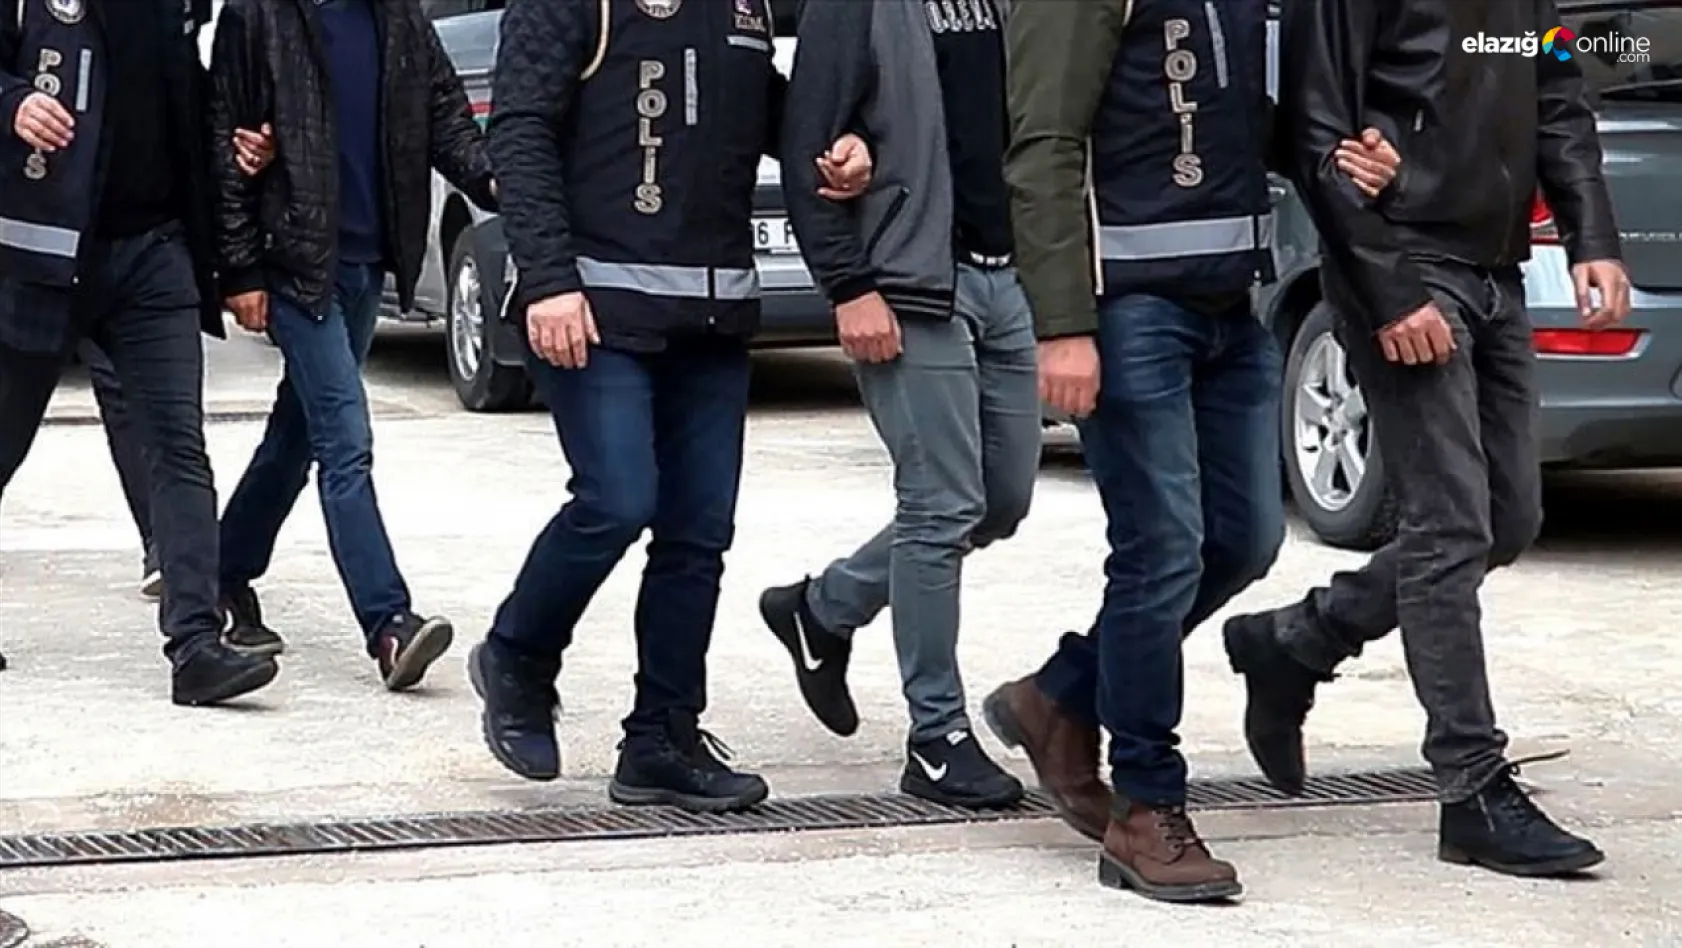 Elazığ'da uyuşturucuyla mücadele sürüyor! 3 kişi uyuşturucu madde ticaretinden tutuklandı